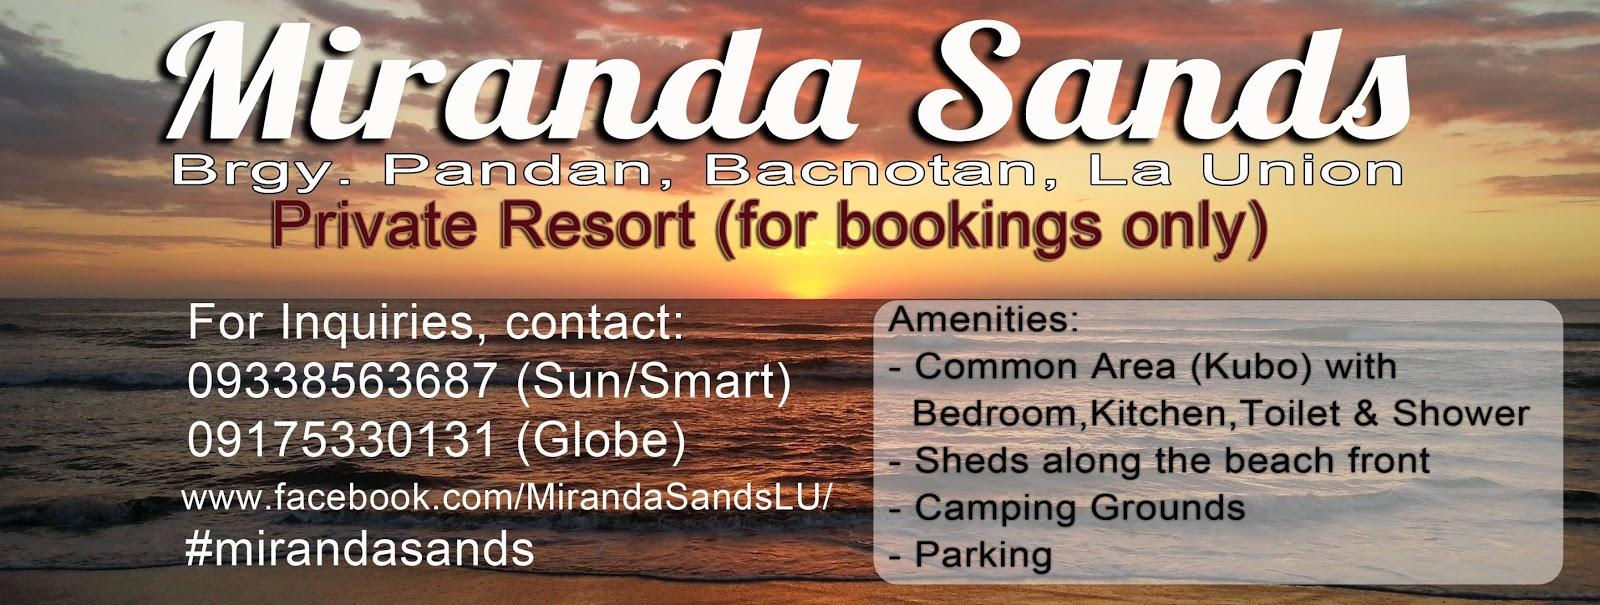 Sandee Miranda Sands Beach And Resort Photo